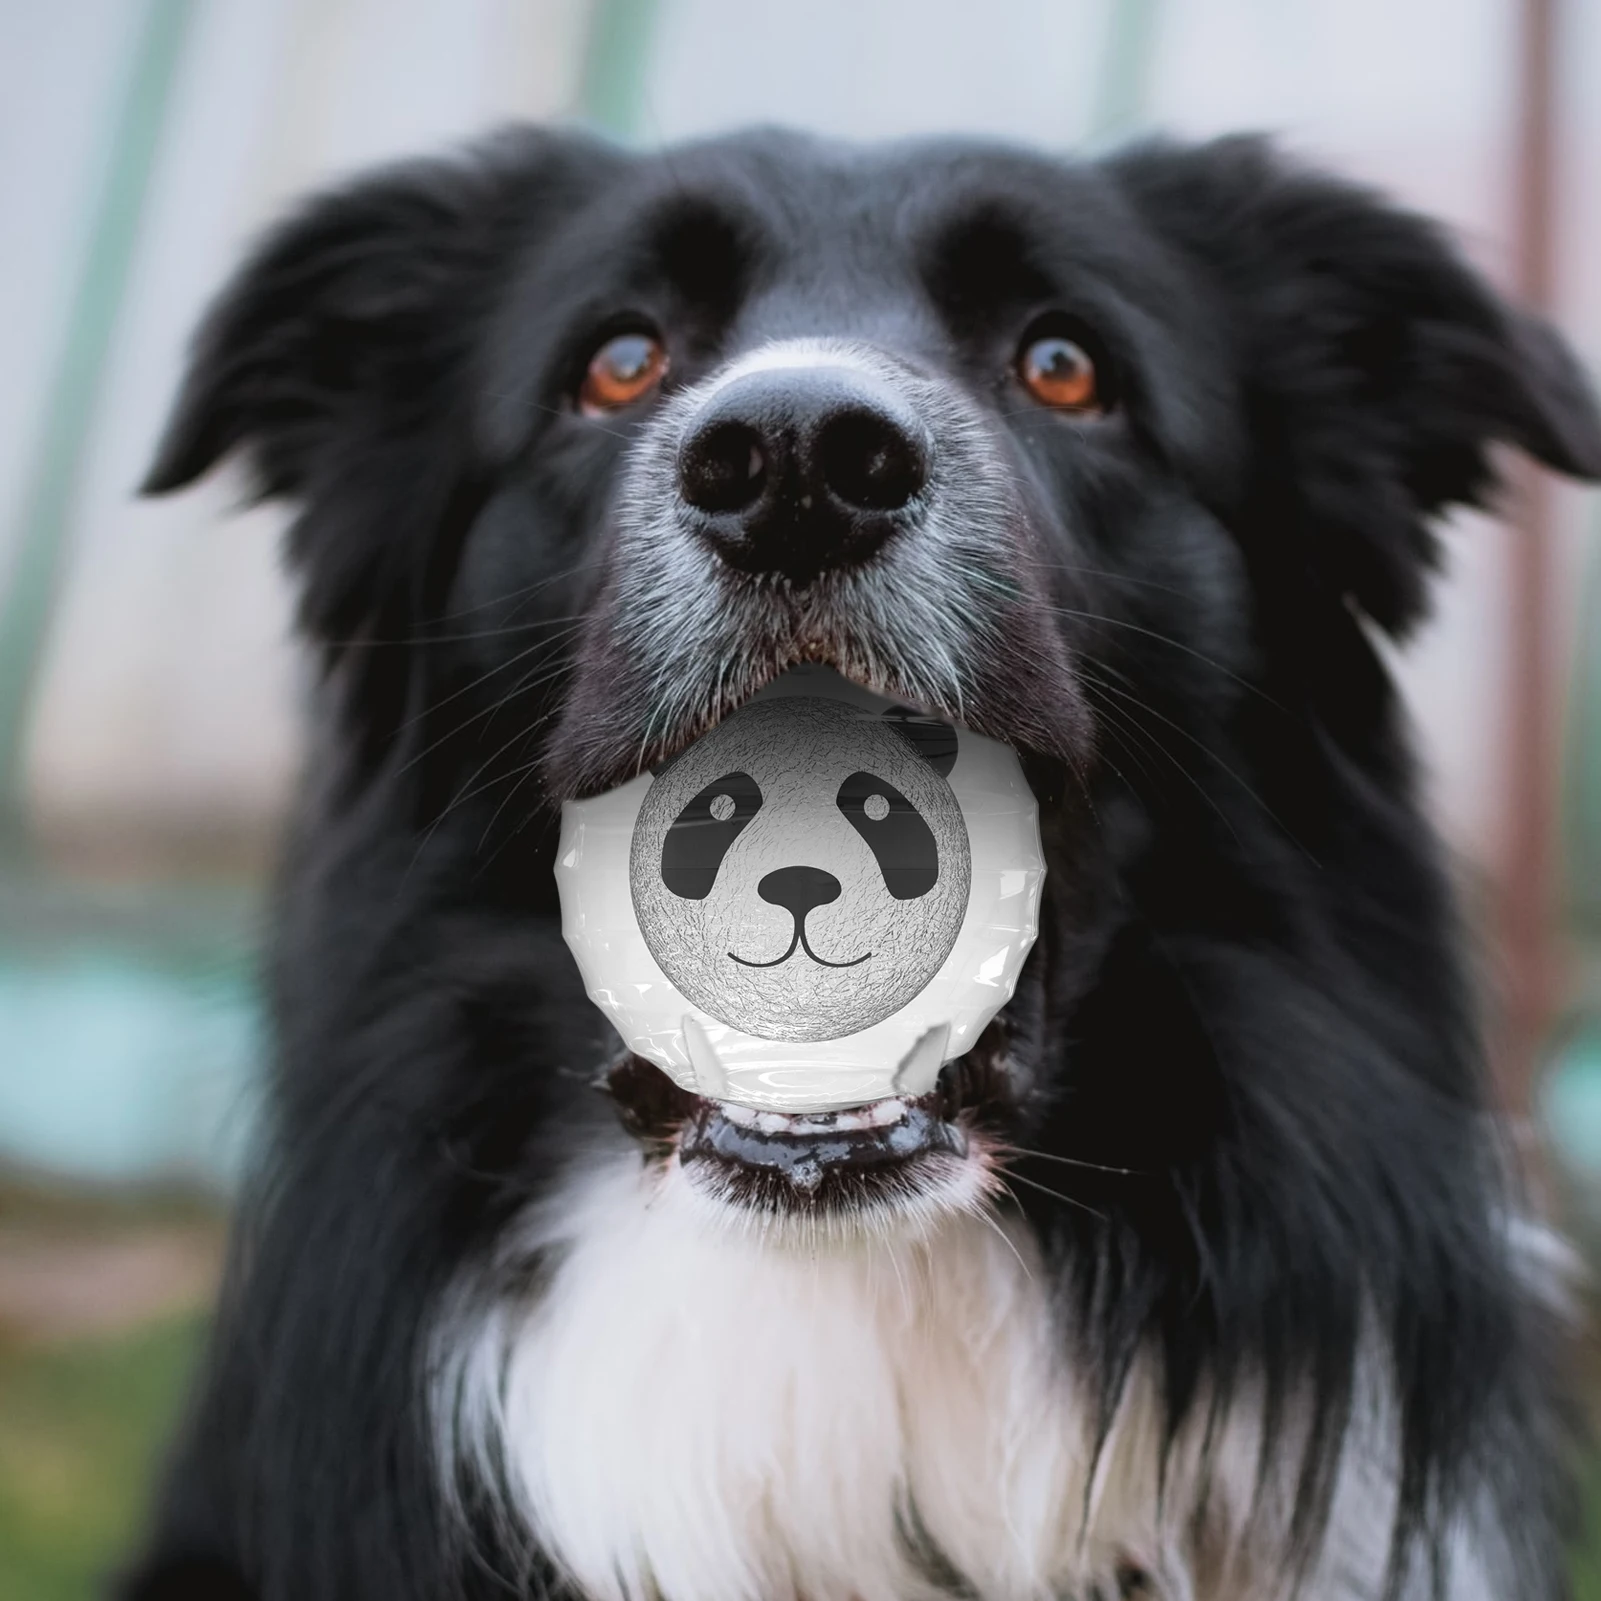 סקוויקי כלב צעצועים אגרסיבי לועסי אינטראקטיבי כלבים חתולים הכדור צעצועים כלב הצעצוע המצפצף על מקורה חתולים/כלבים זוהר אינטראקטיבי